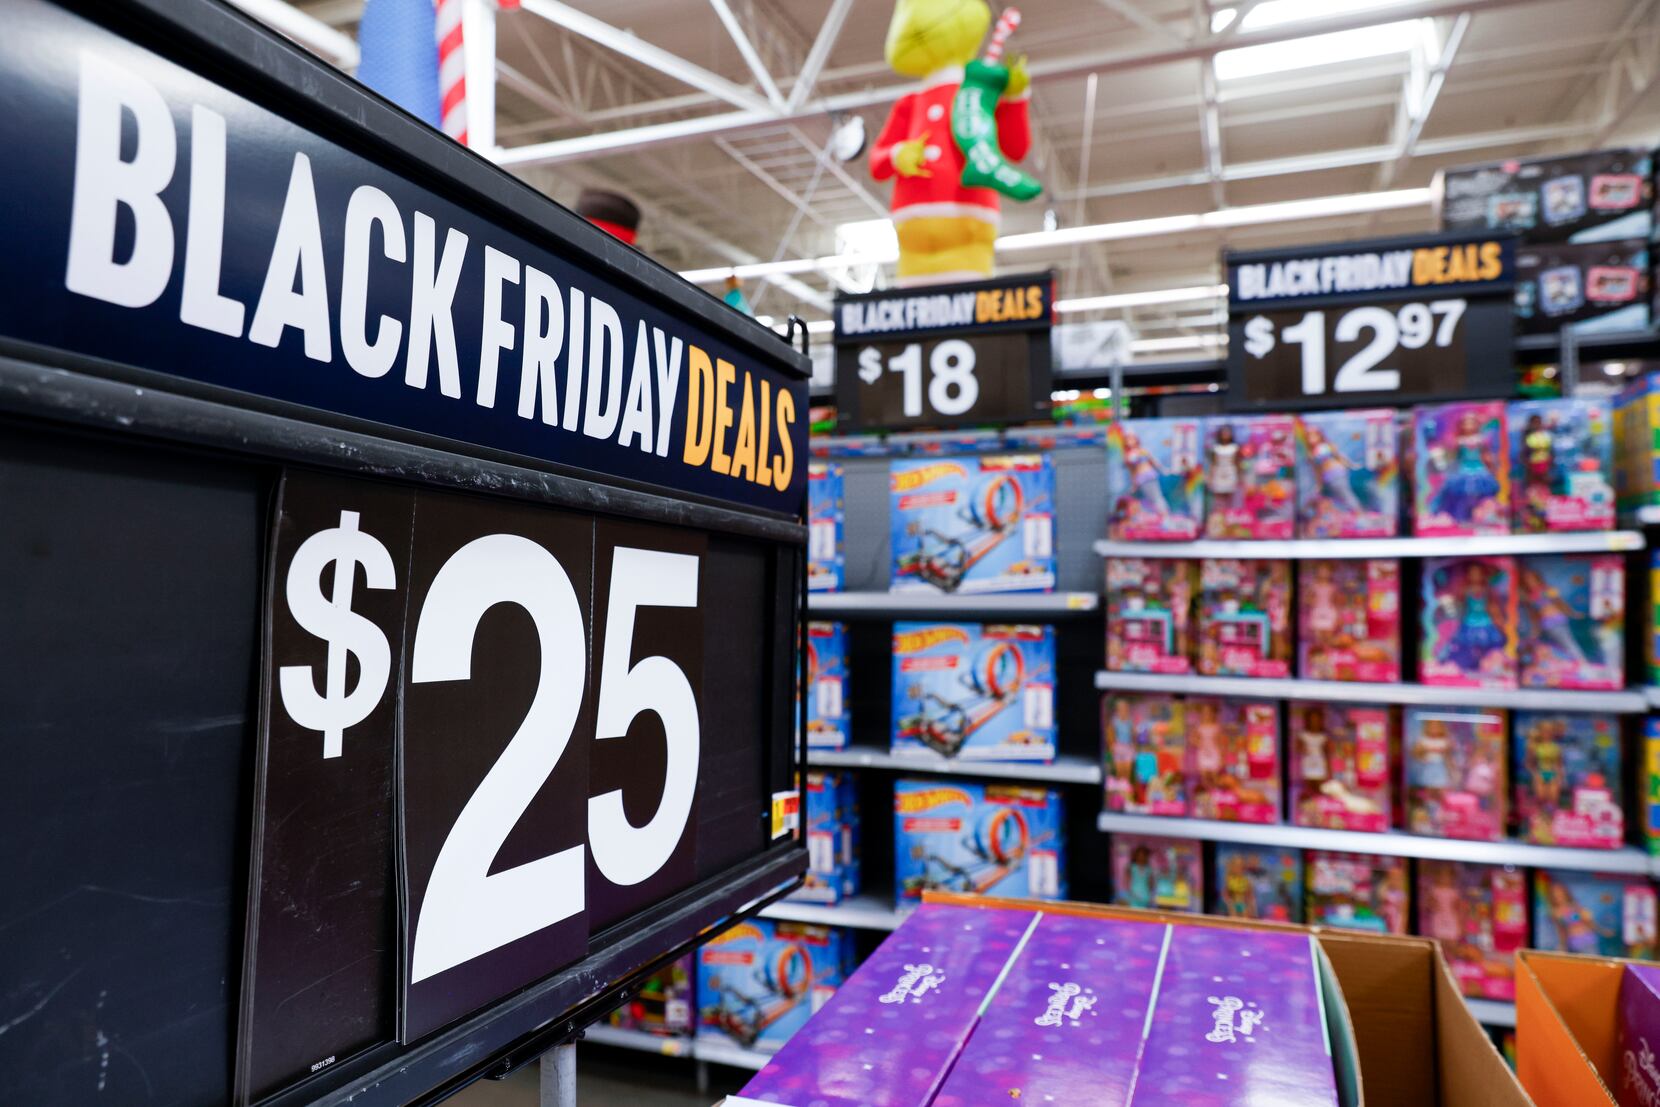 Black Friday 2020: Get a KitchenAid mixer for less than $200 at Home Depot